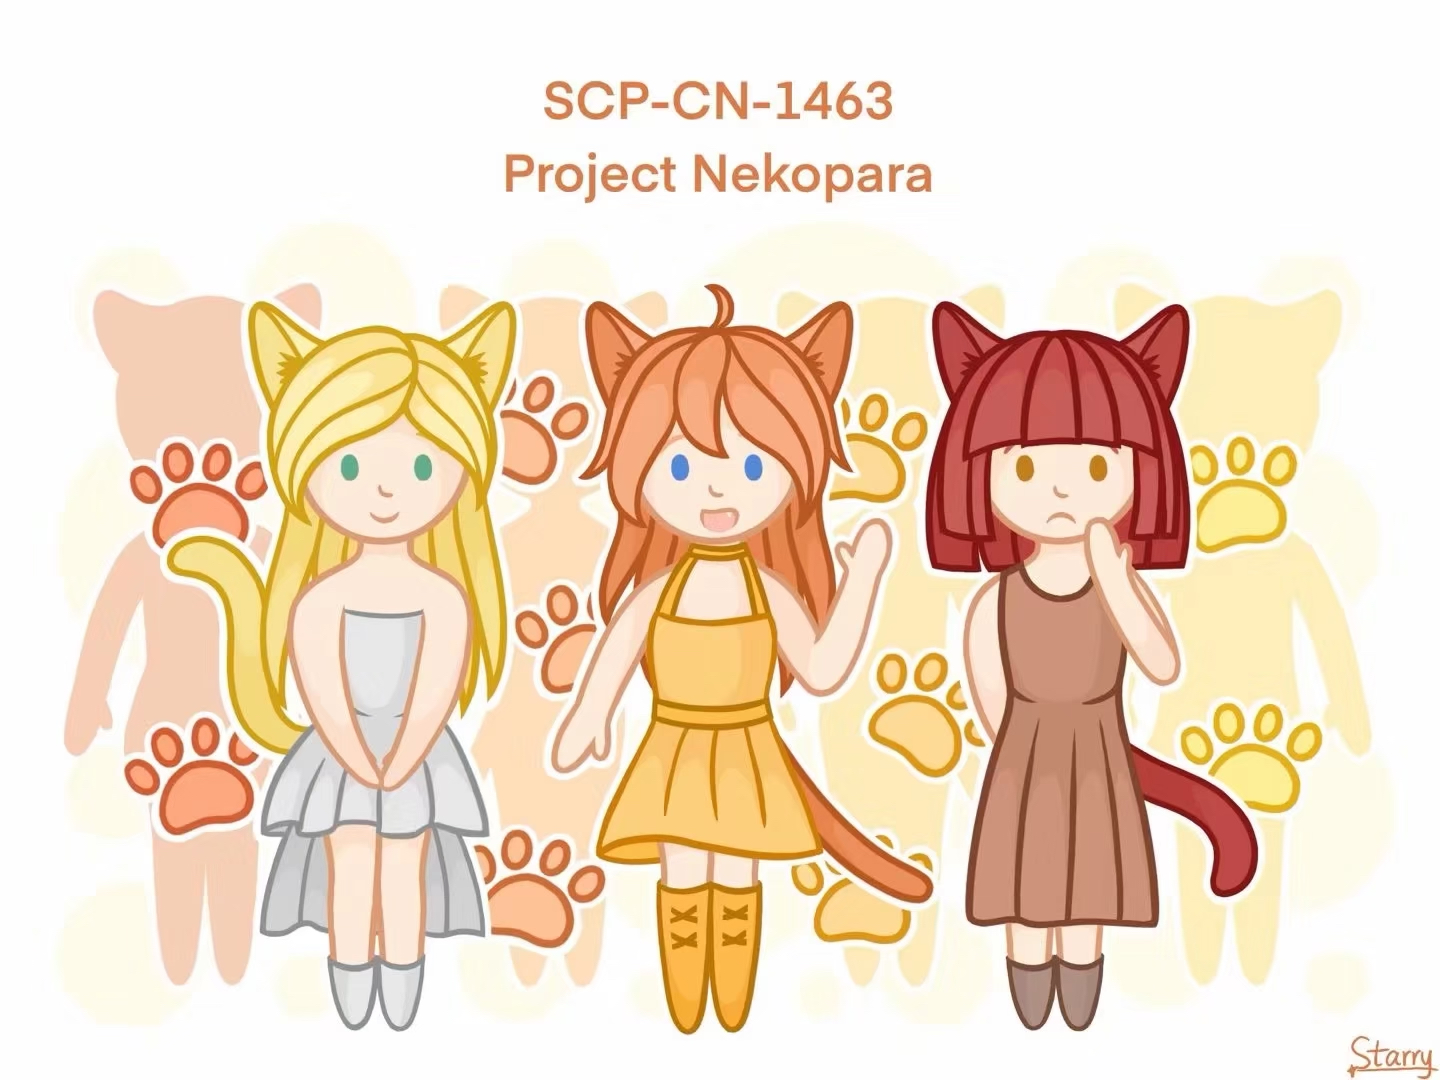 SCP-CN-1463 Project Nekopara